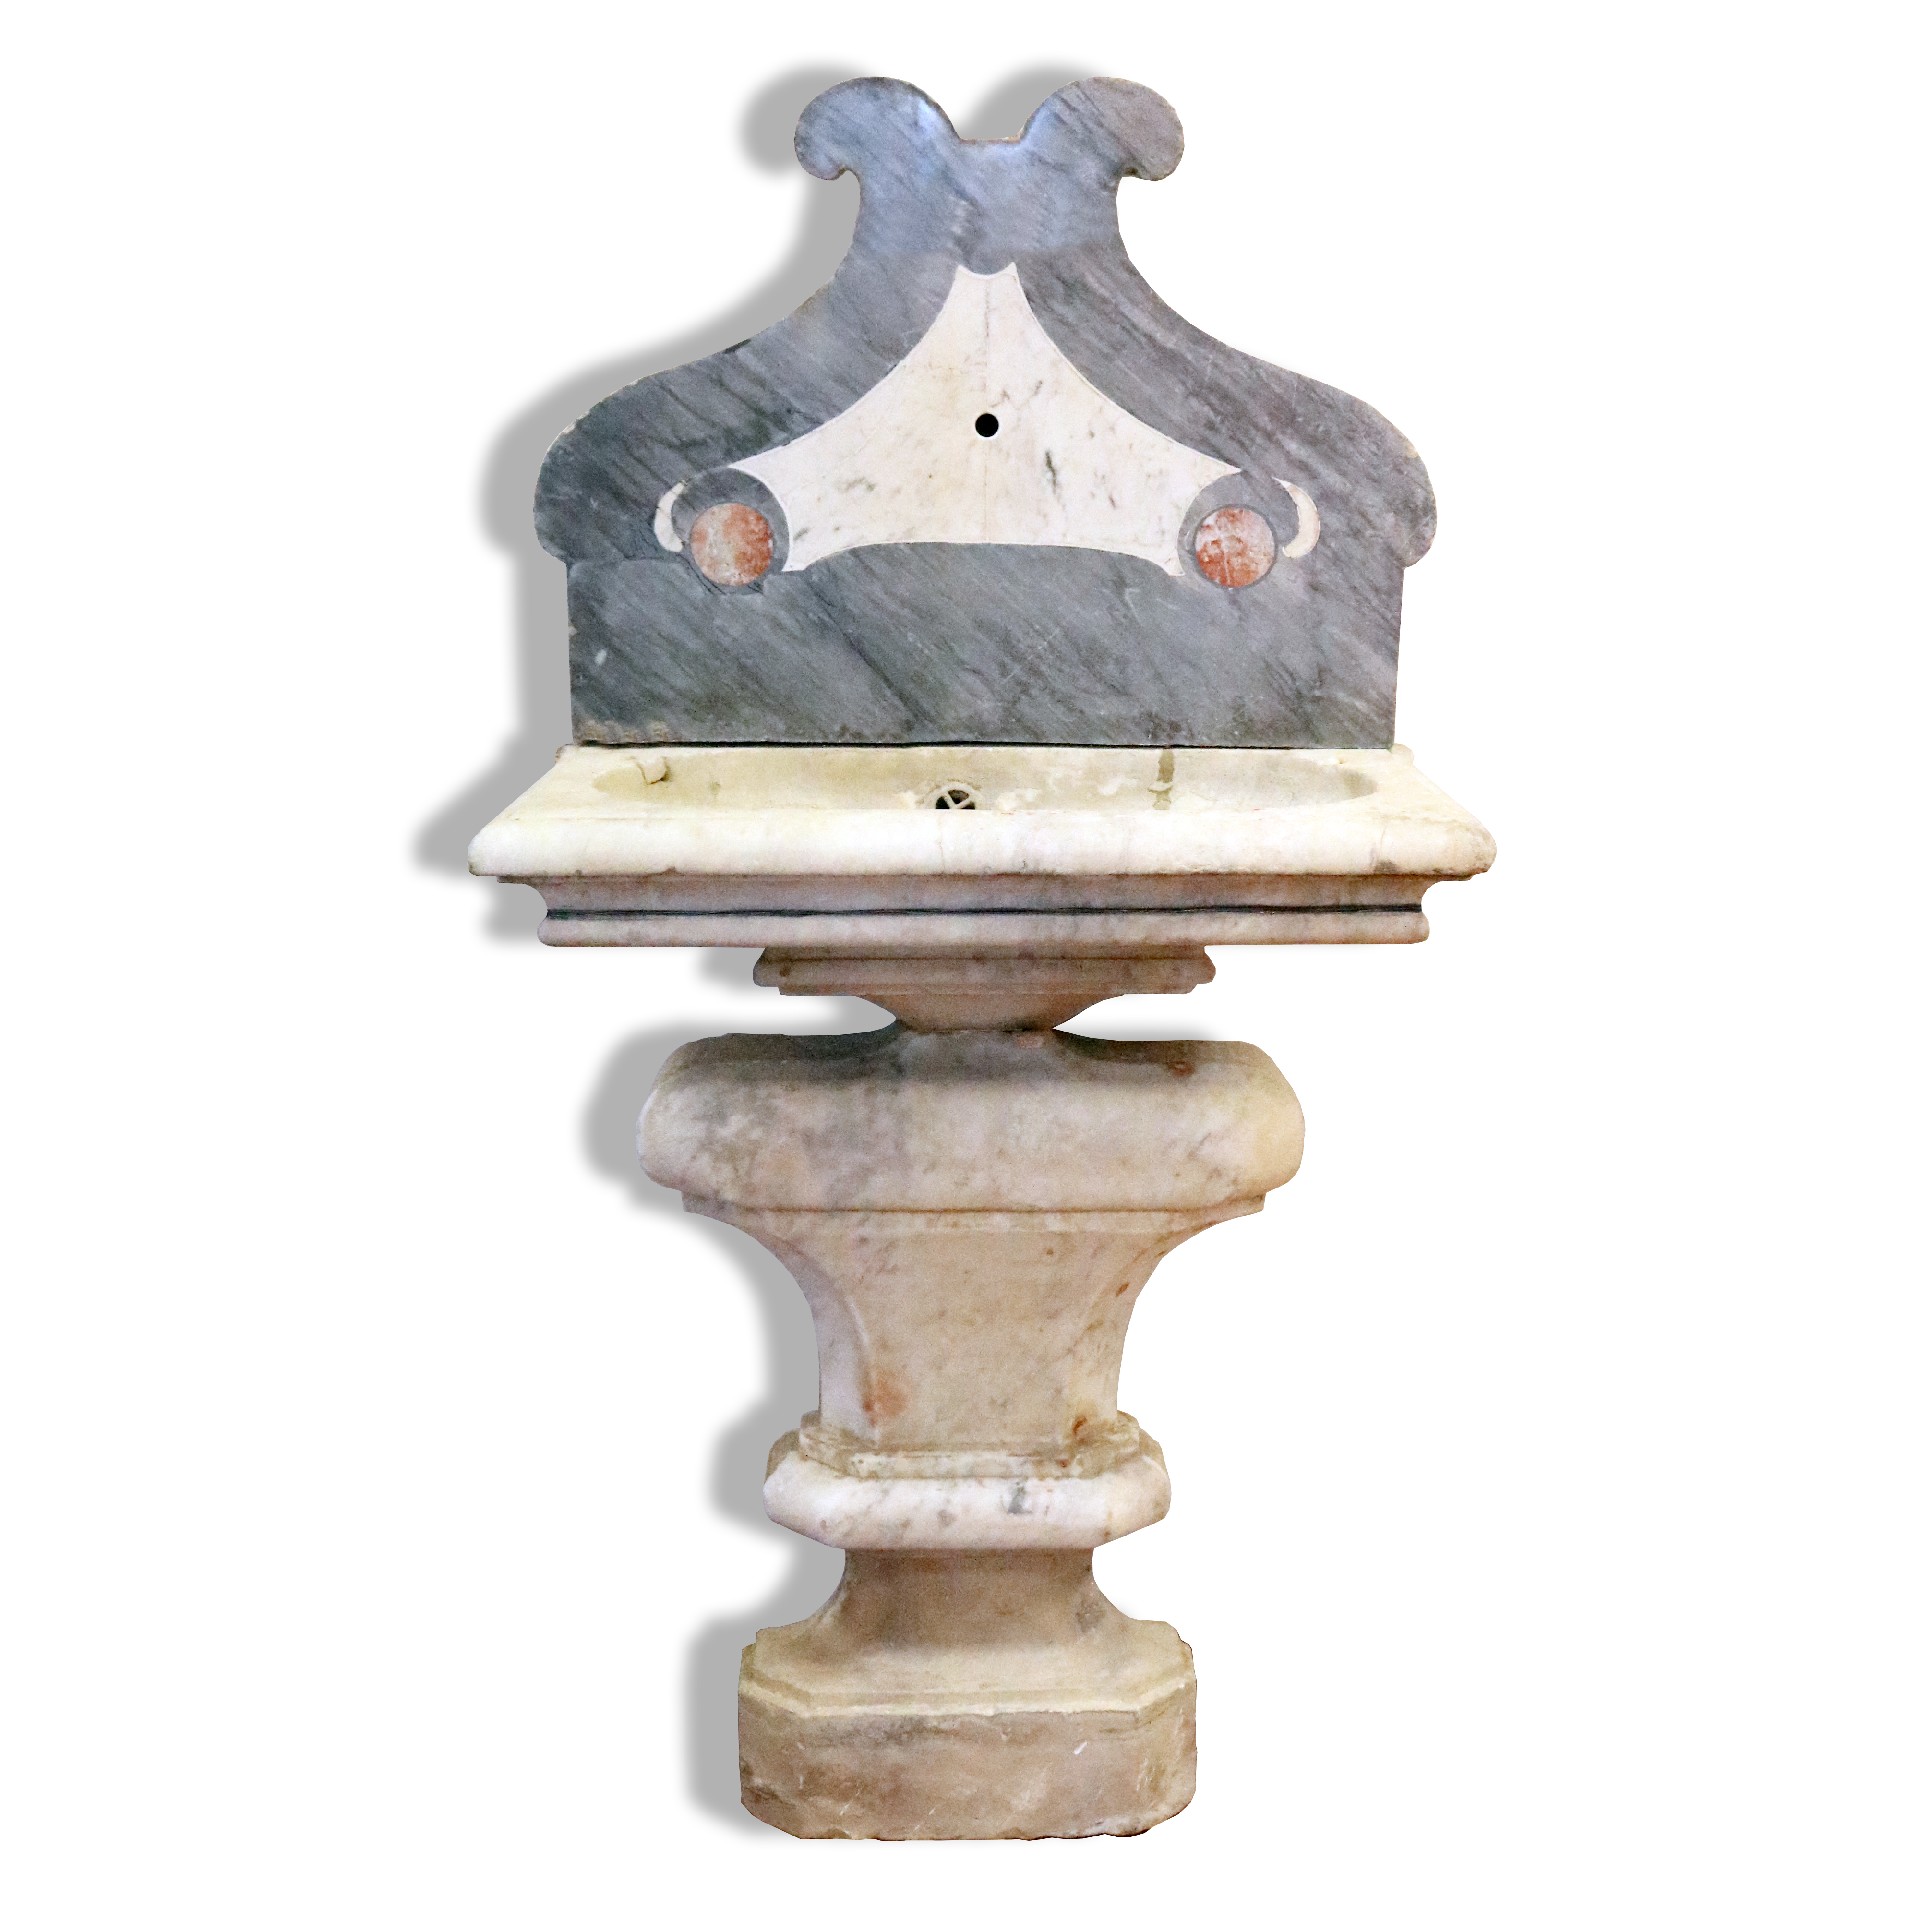 Antica fontana in marmo da muro. - Fontane Antiche - Arredo Giardino - Prodotti - Antichità Fiorillo